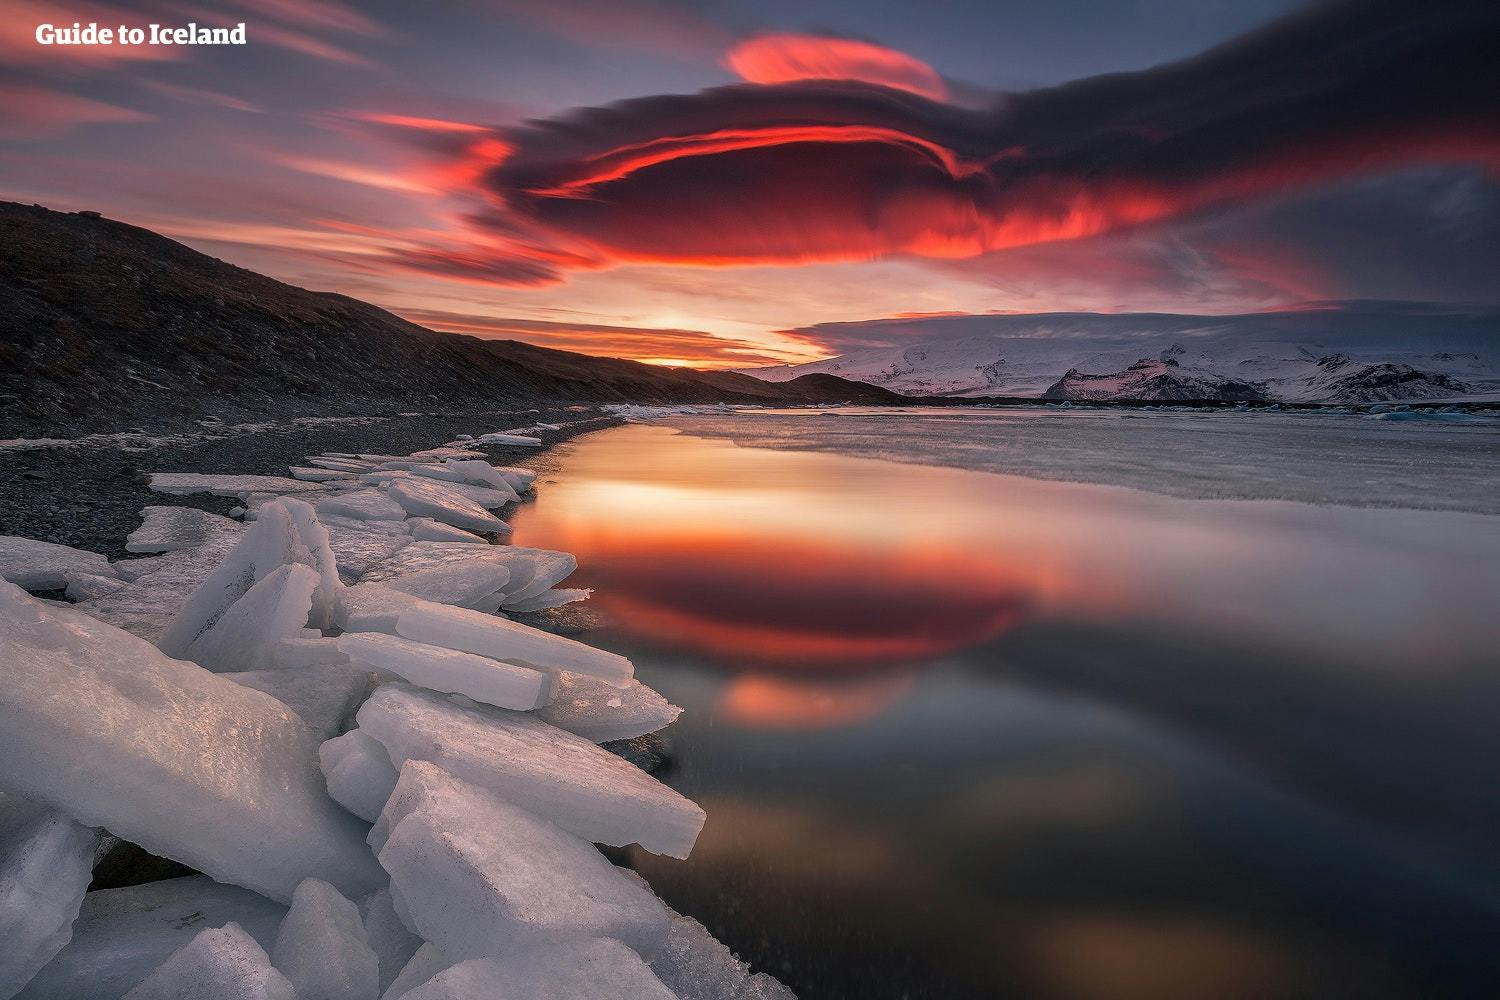 ท้องฟ้ากลายเป็นสีแดงเมื่อพระอาทิตย์ลับขอบฟ้าเหนือทะเลสาบธารน้ำแข็งโจกุลซาลอน